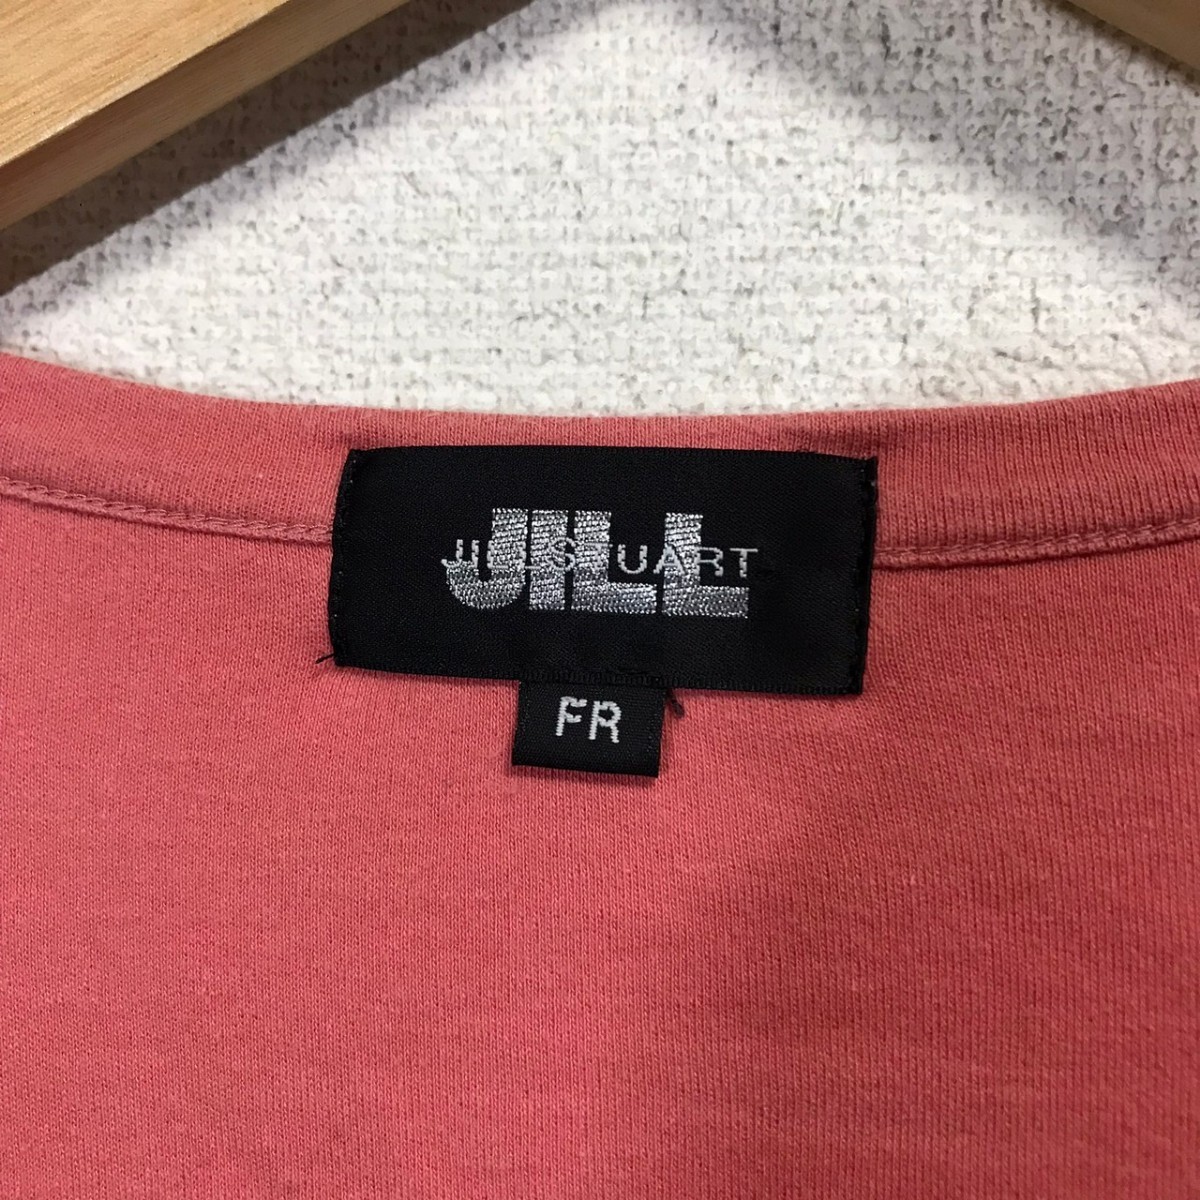 F7237dL сделано в Японии JILL STUART Jill Stuart размер FR (M ранг ) трикотажный джемпер с длинным рукавом розовый лента женский Kawai iCUTE тянуть over 